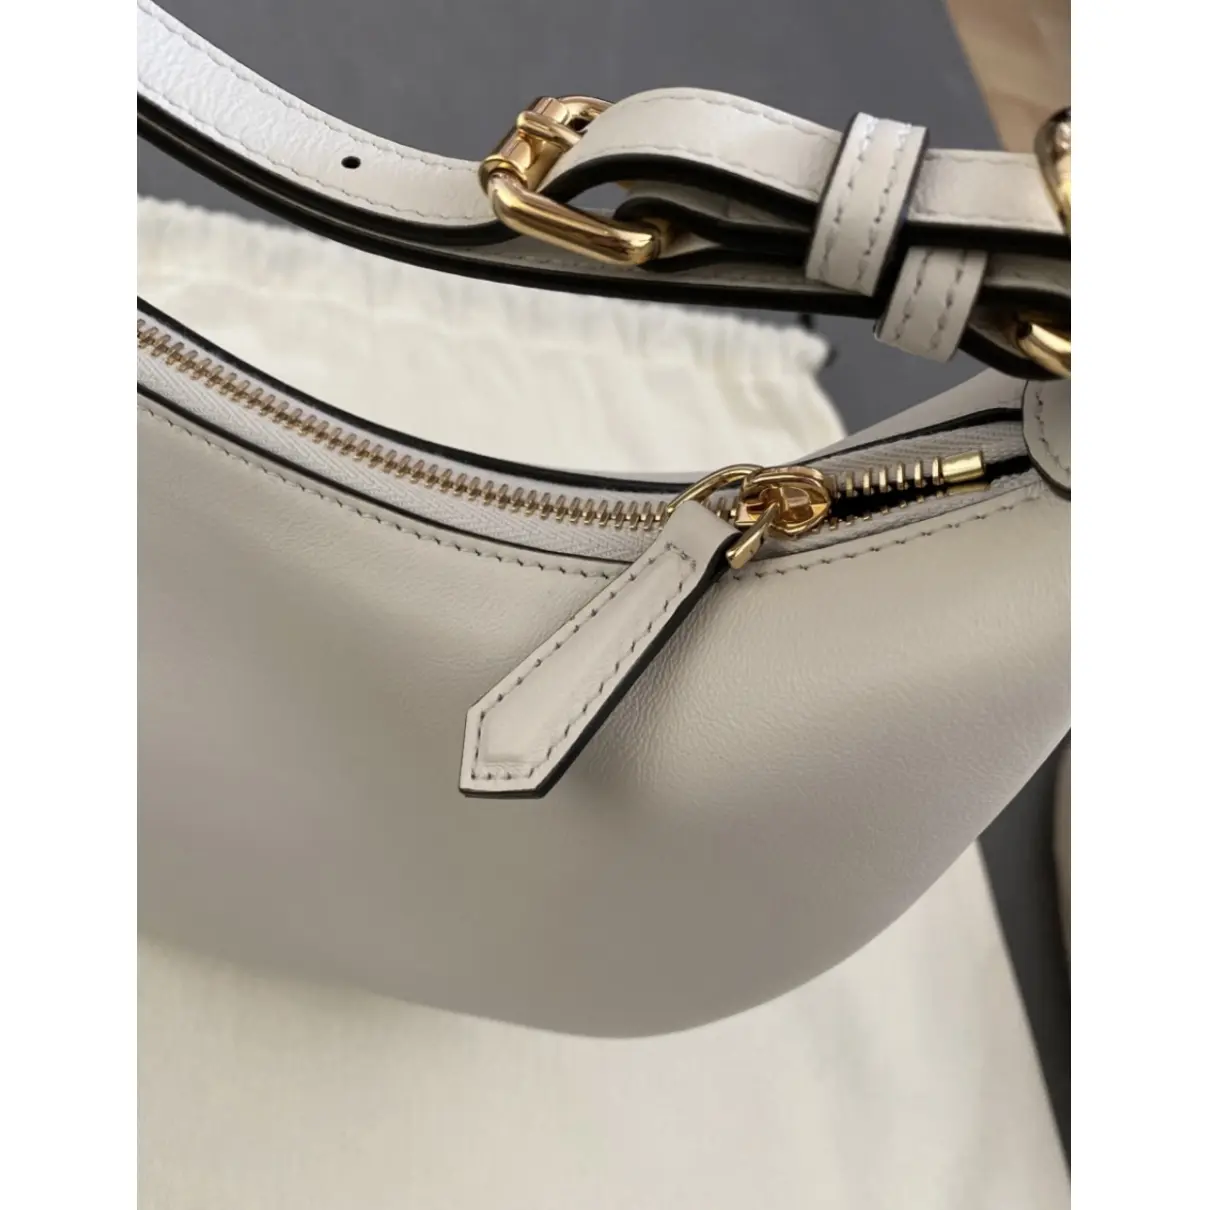 Buy Fendi Fendigraphy leather handbag online